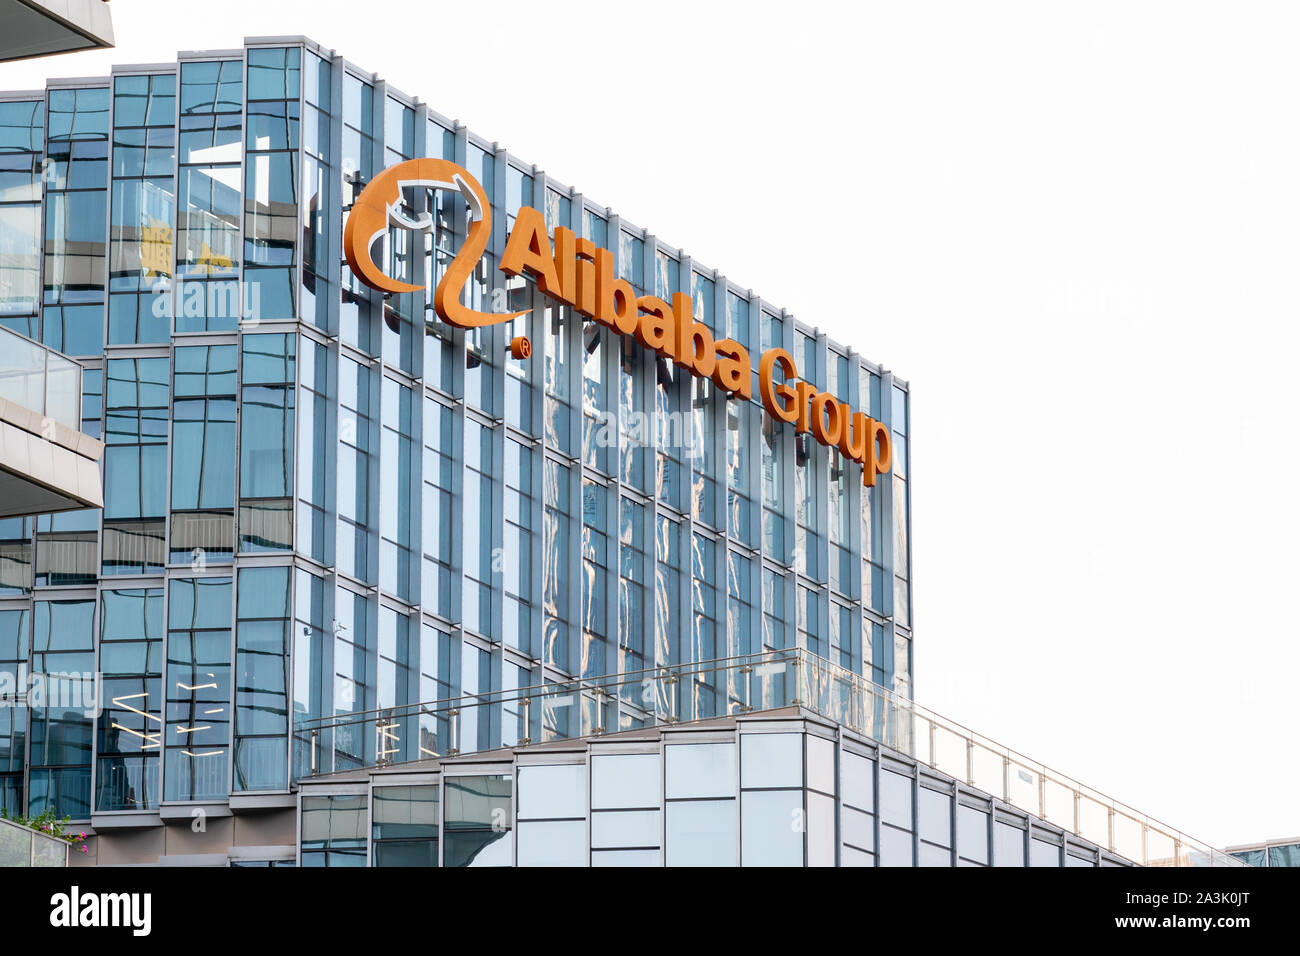 Multinazionale cinese e-commerce, retail, Internet e il conglomerato di tecnologia società holding del Gruppo Alibaba logo che si vede sulla cima di un grattacielo. Foto Stock